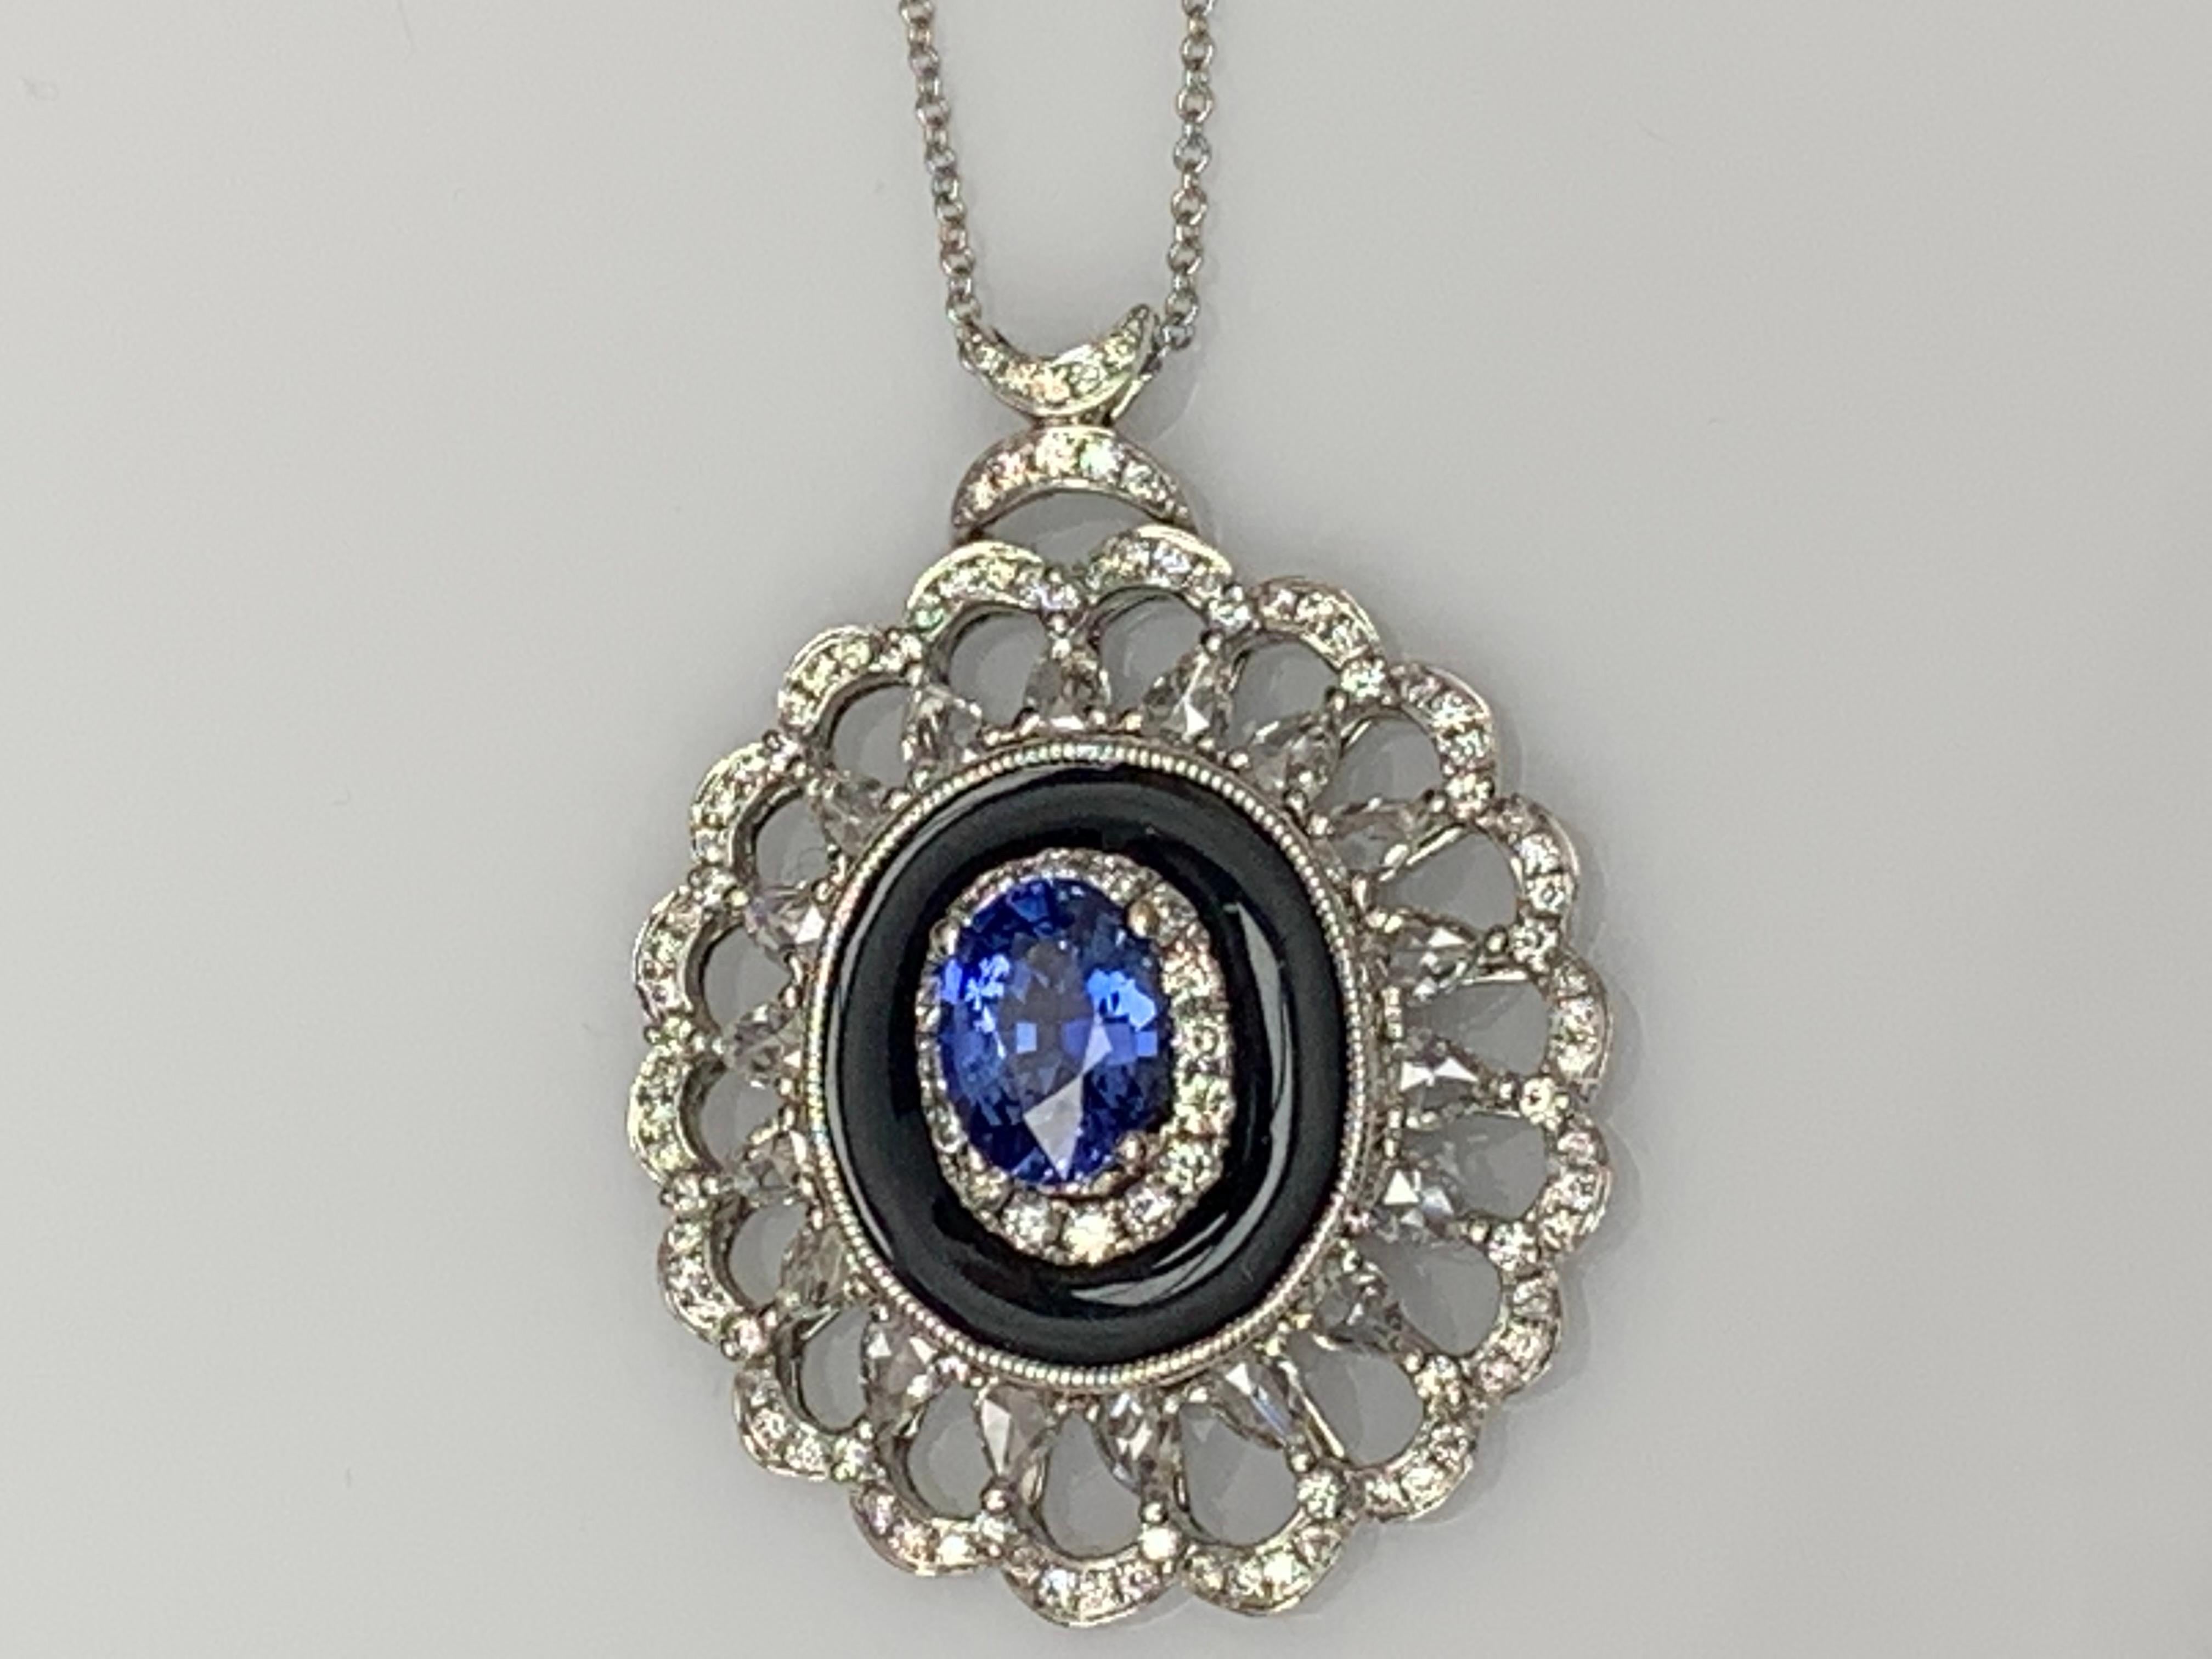 Eine schlichte Halskette mit Blumenmotiv und einem 1,50-karätigen Saphir im Ovalschliff, umgeben von schwarzer Emaille und 0,94 Karat von 18 runden Diamanten in einem durchbrochenen Design. Hergestellt aus 18 Karat Weißgold.

Style ist in